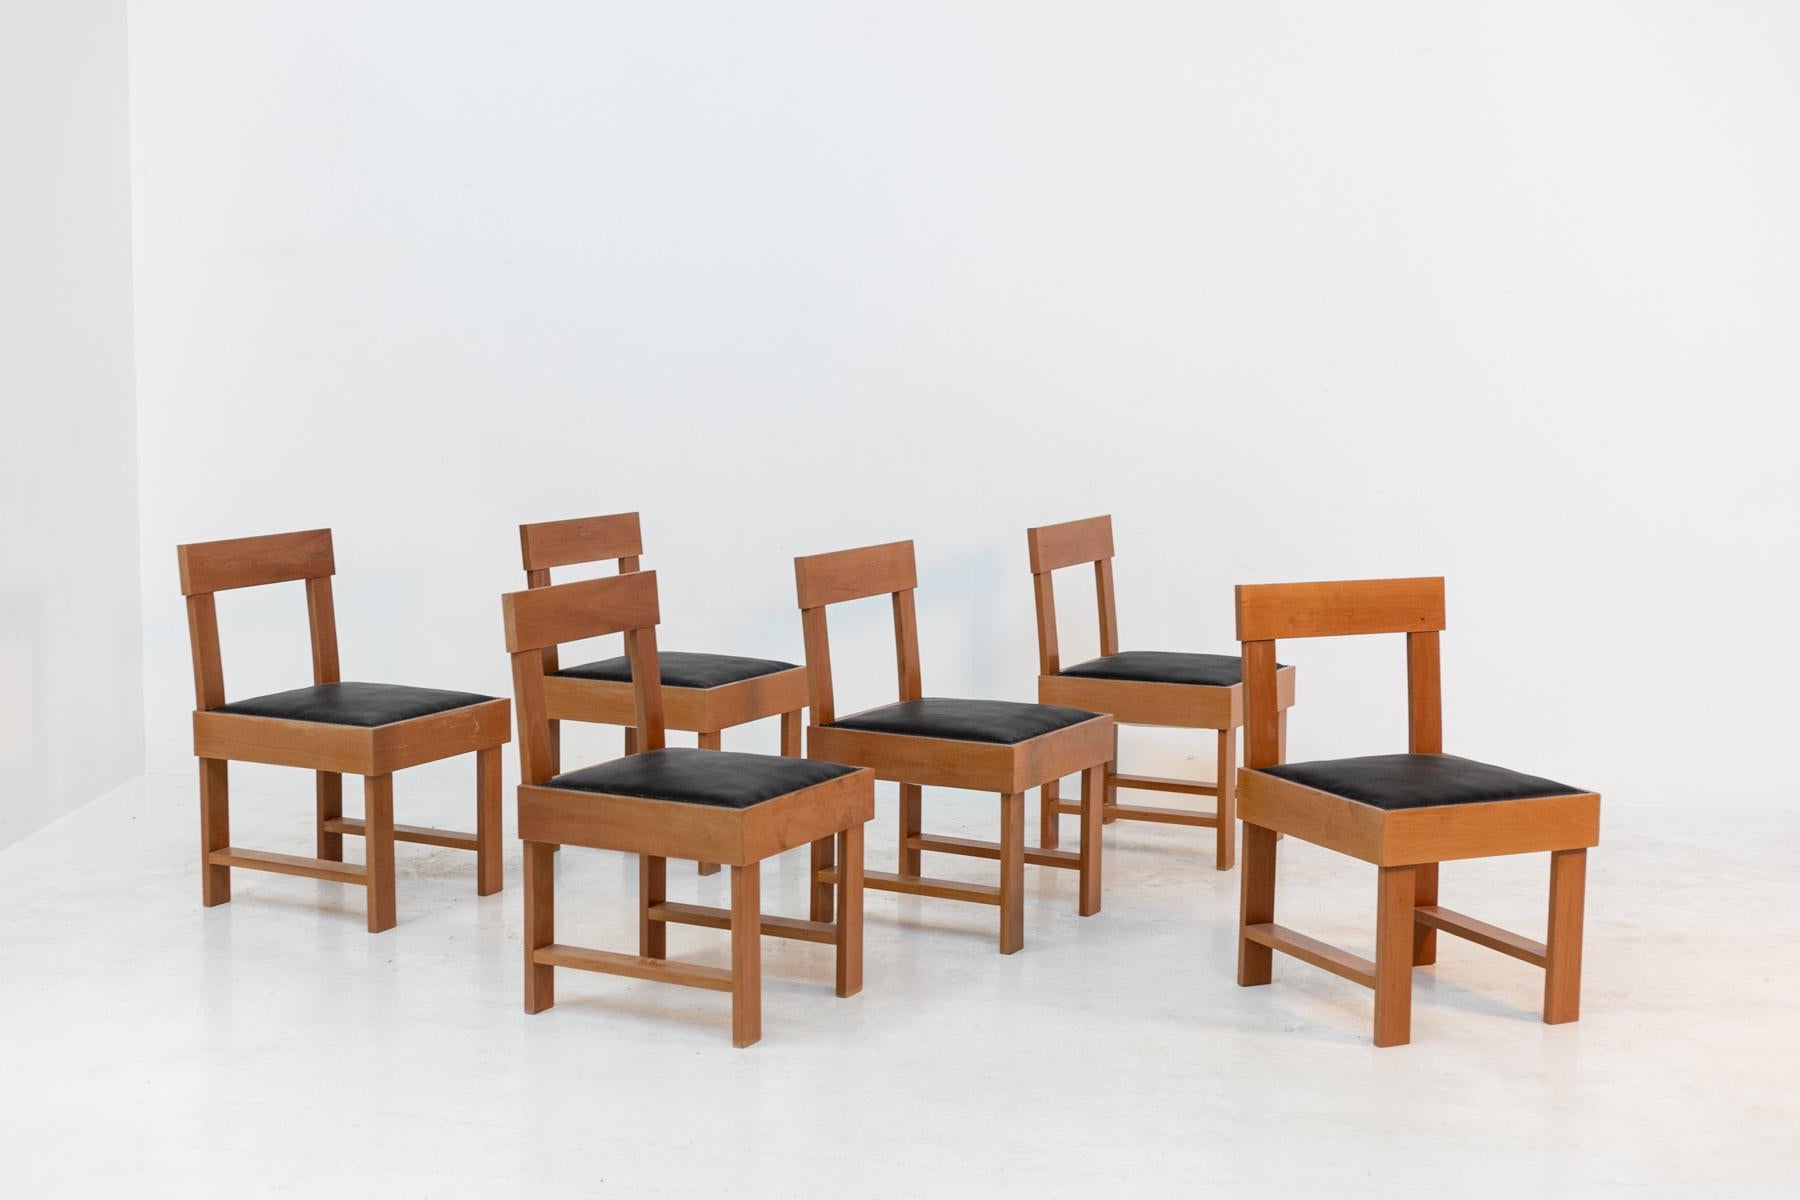 Superbe ensemble italien composé de six chaises BBPR du 20ème siècle.Les chaises sont publiées dans le catalogue de meubles déco italiens.En excellent état car elles ont été récemment restaurées et retapissées en cuir noir fin.Les chaises ont des